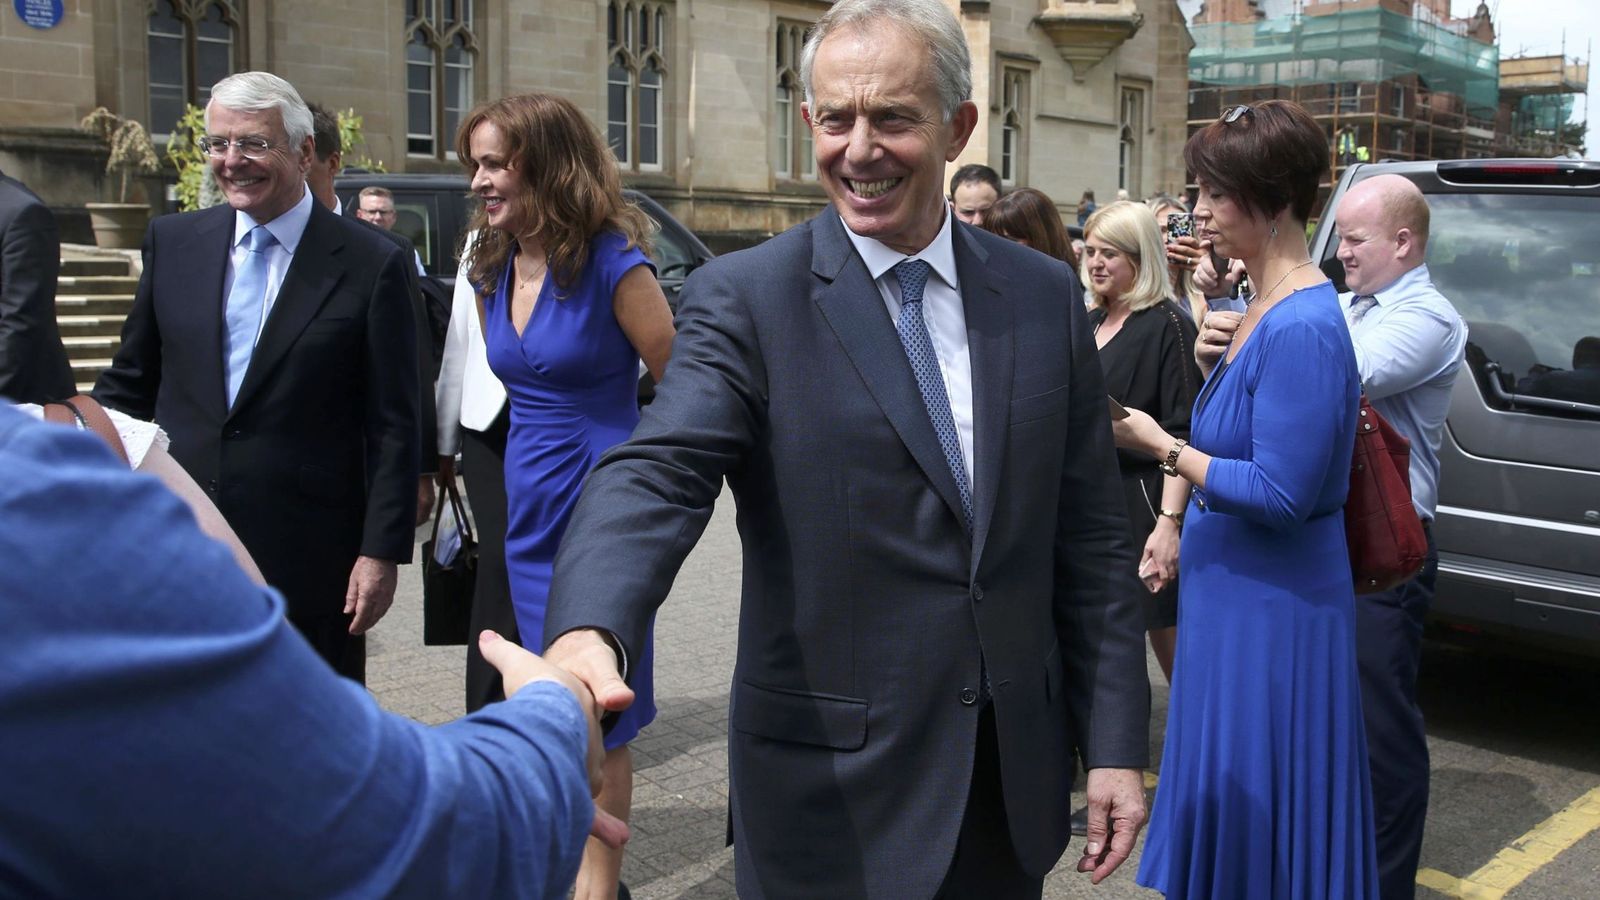 Foto: Tony Blair estrecha la mano de un ciudadano durante un evento en la Universidad del Ulster en Londonderry, Irlanda del Norte, el 9 de junio (Reuters)